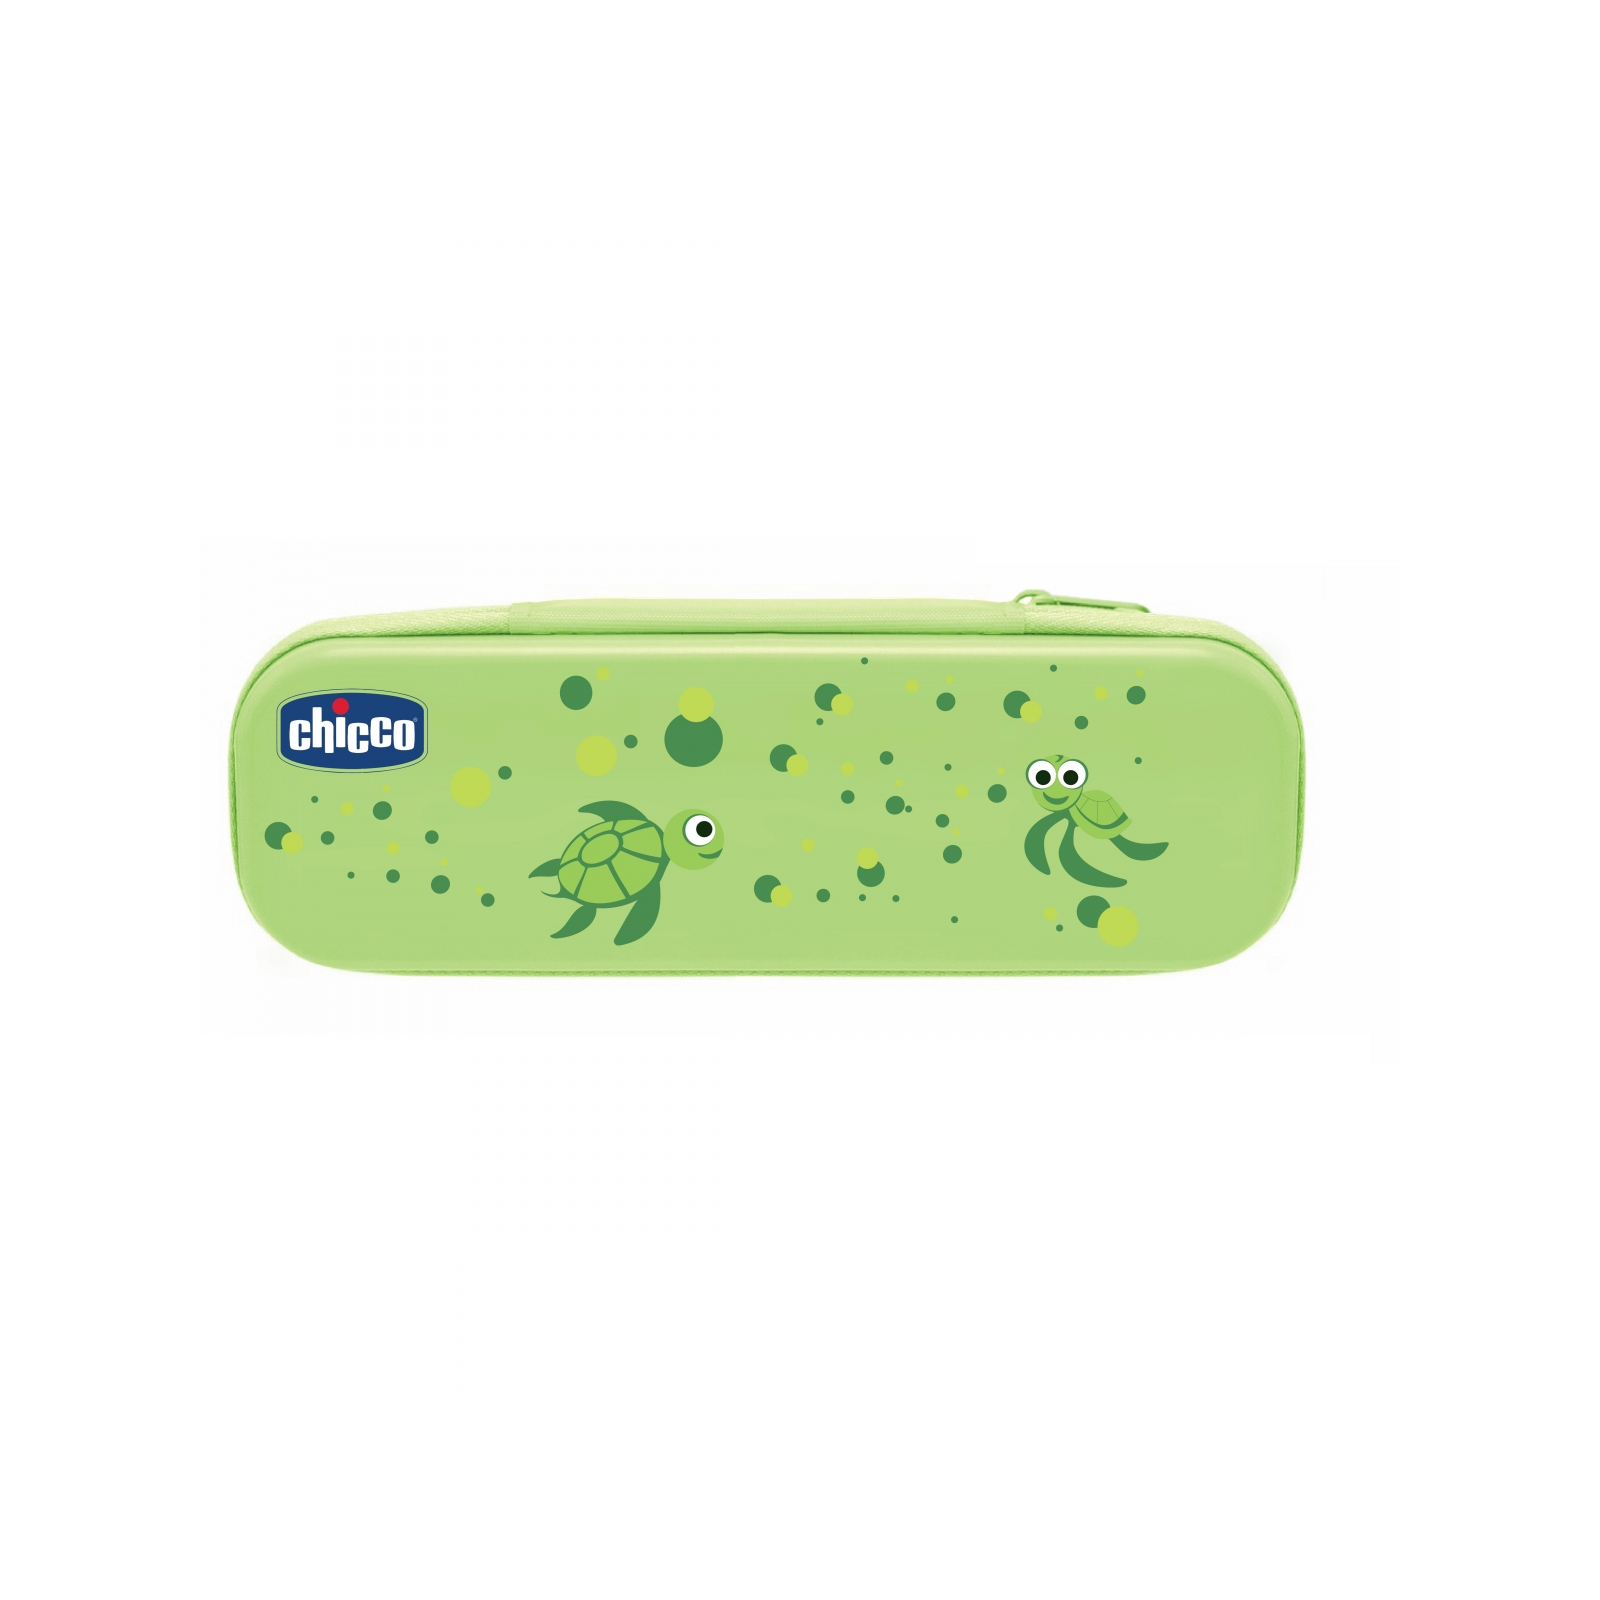 Детская зубная щетка Chicco щетка + паста зеленый (06959.00)